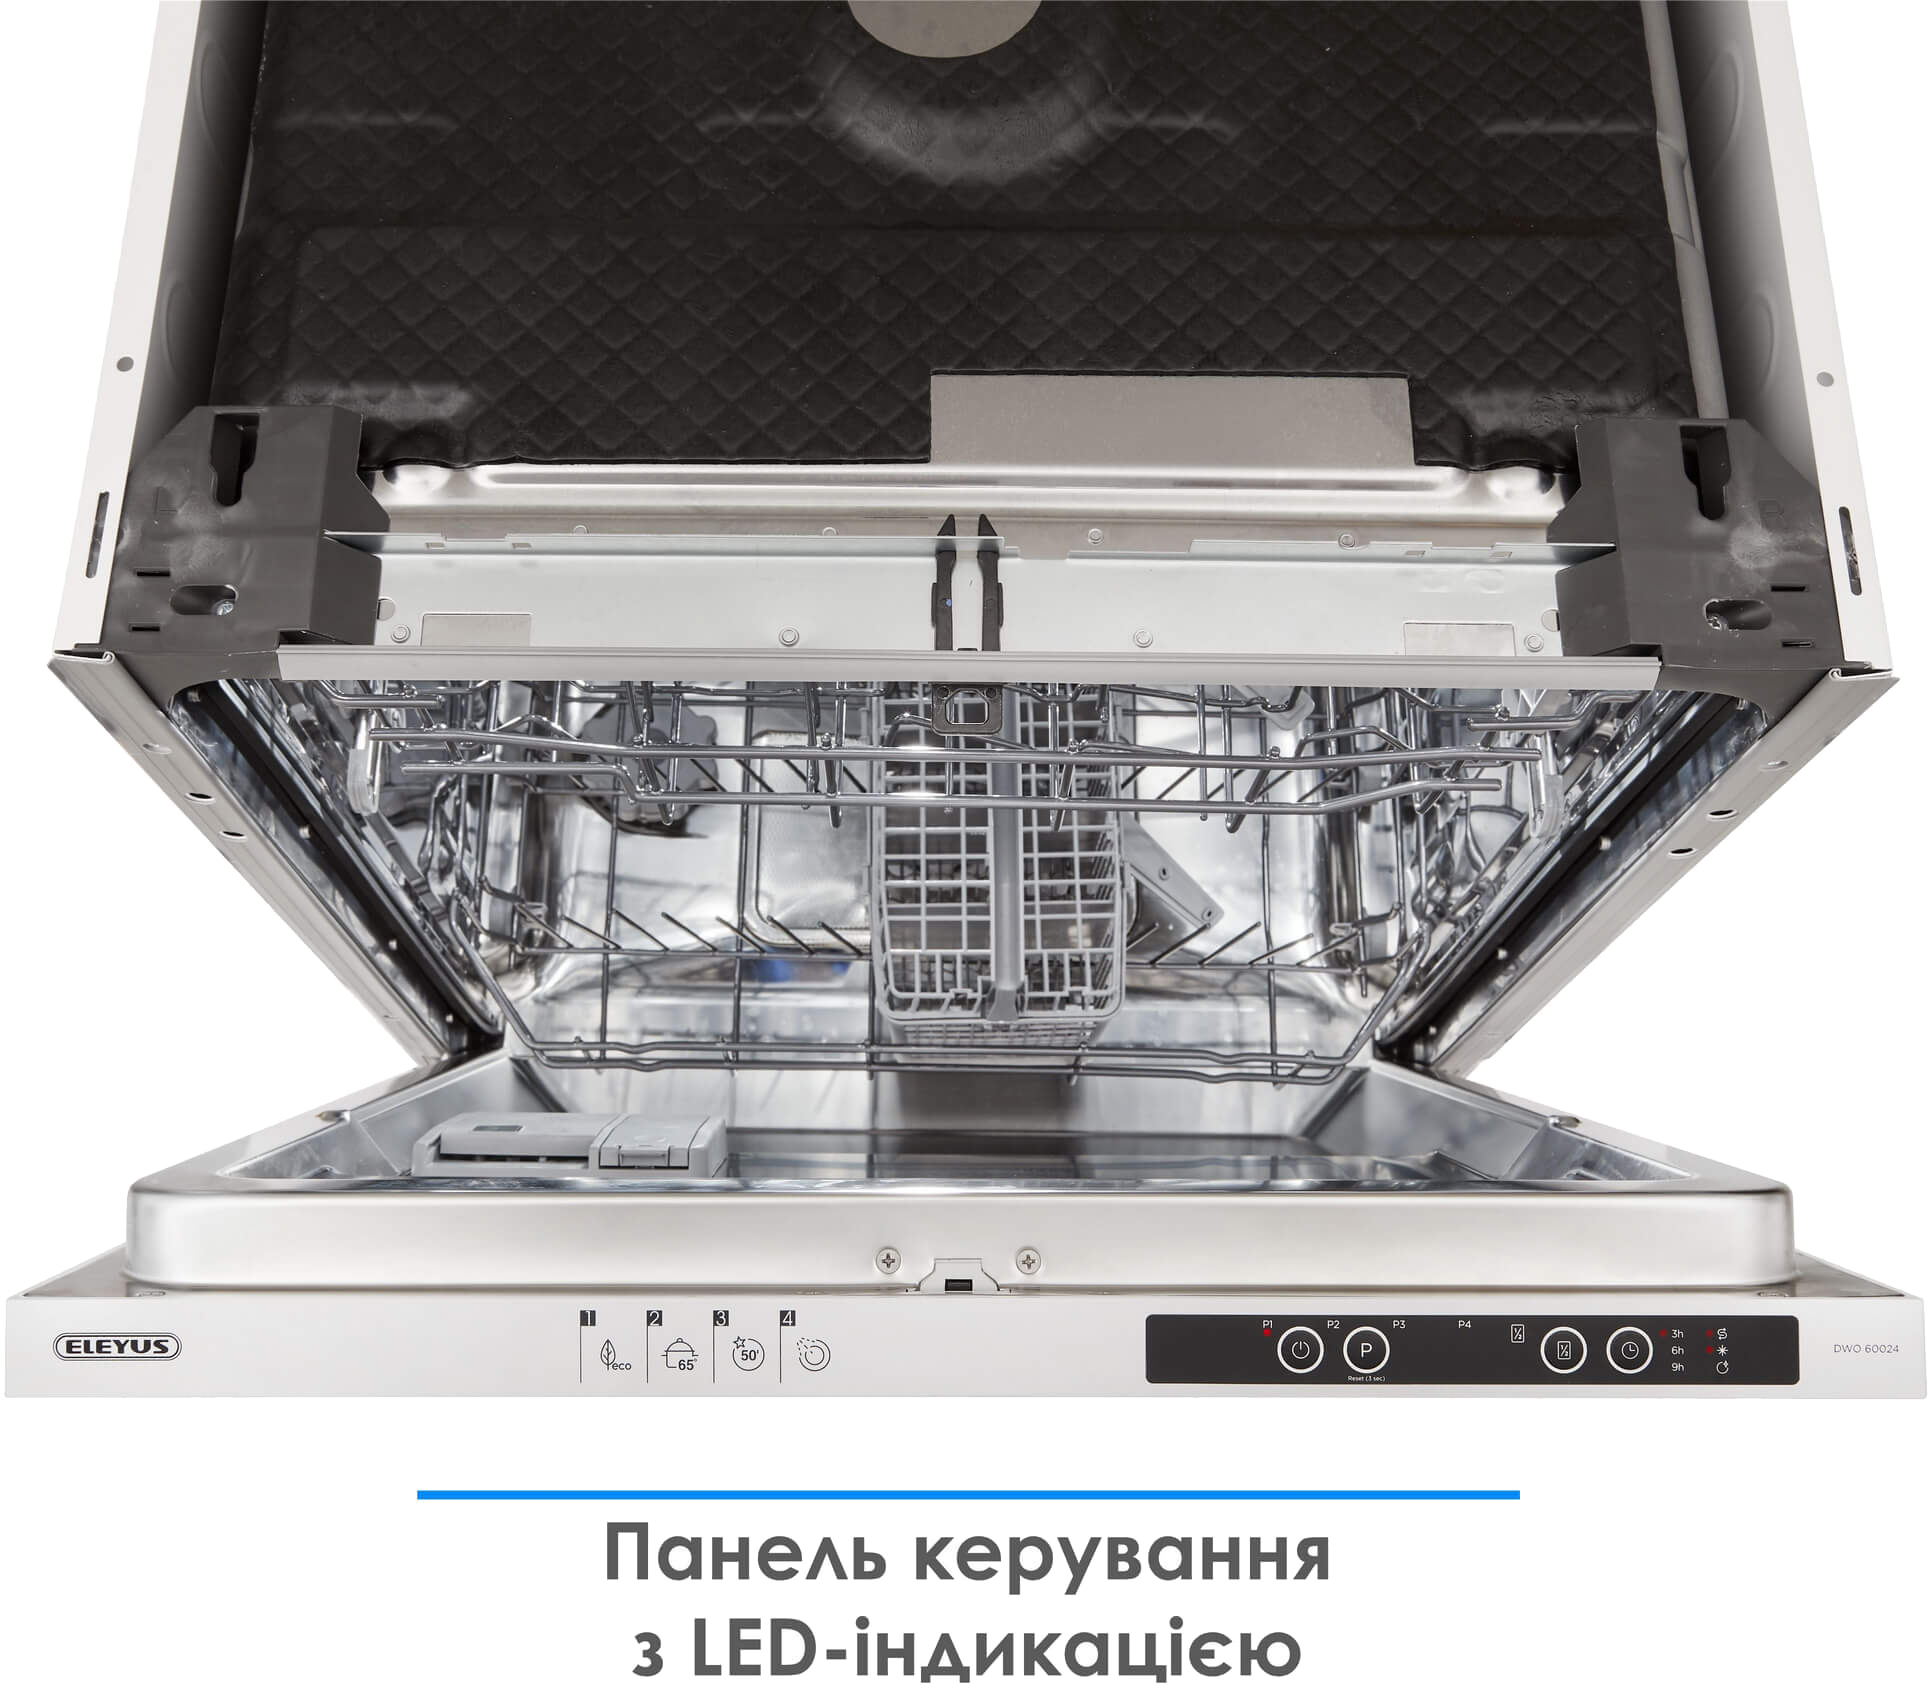 Посудомоечная машина Eleyus DWO 60024 инструкция - изображение 6